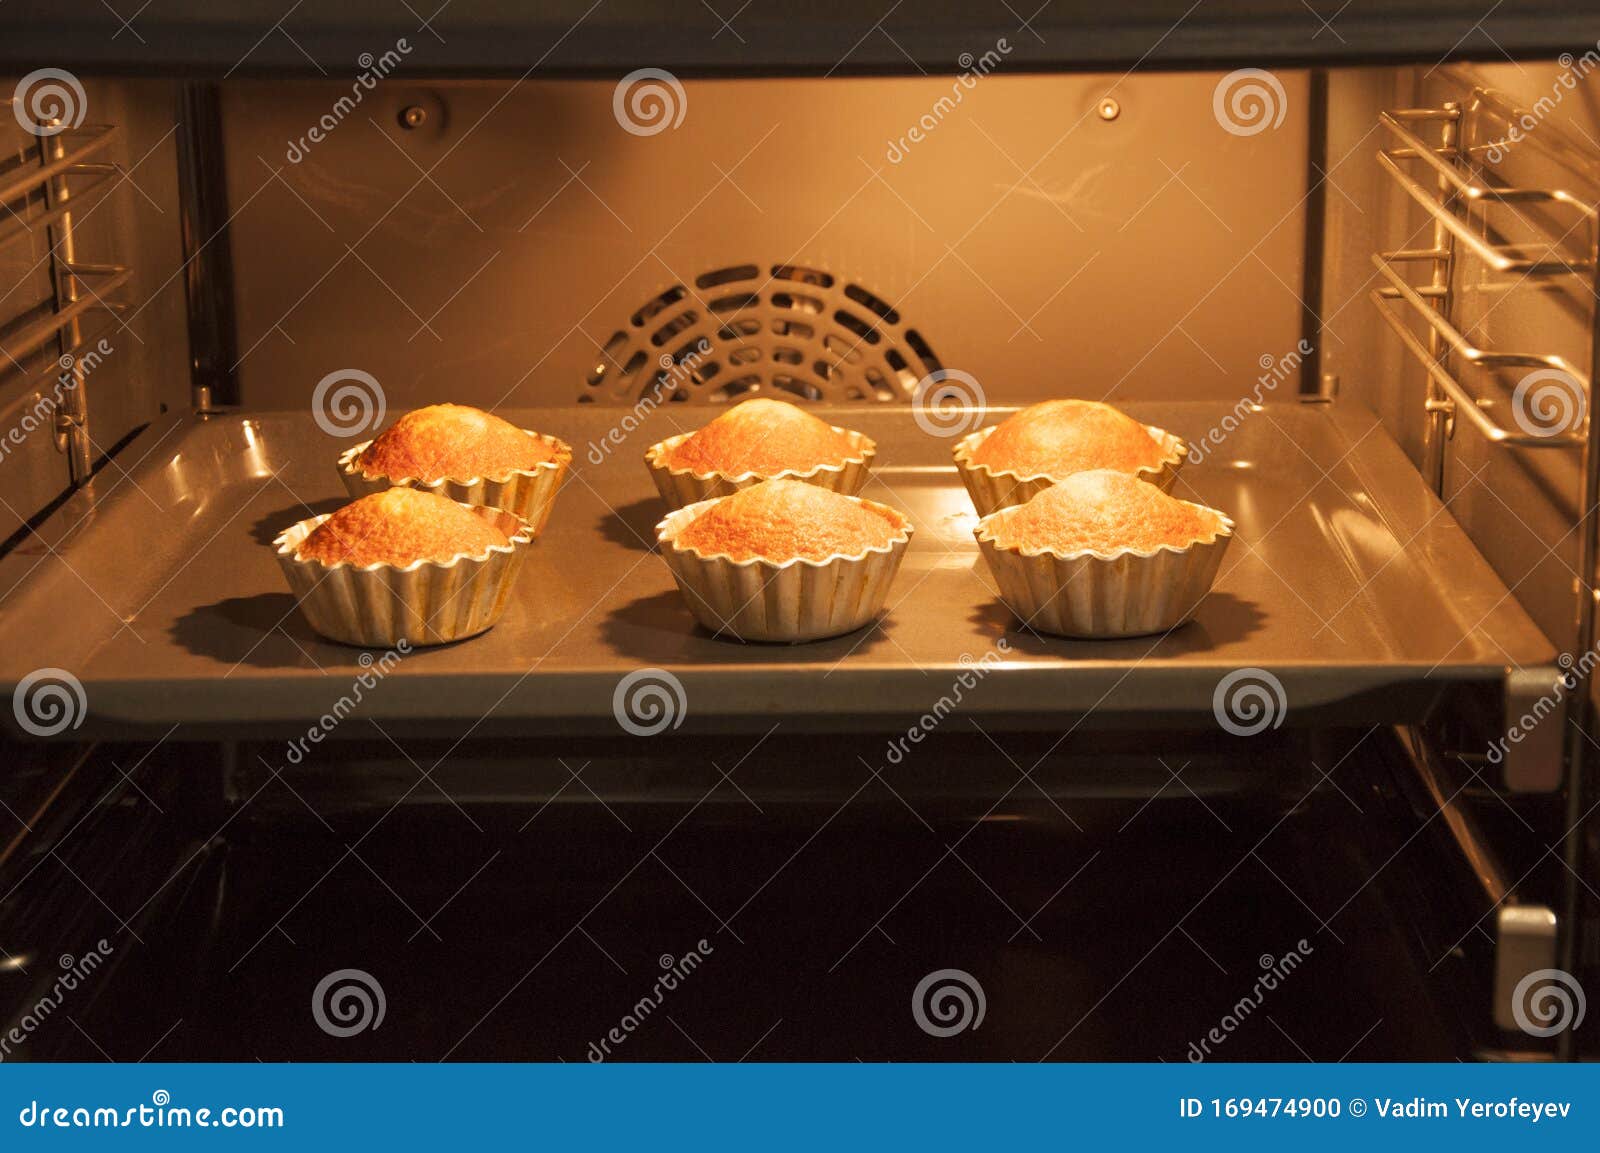 Вкусные Пироги В Духовке С Фото